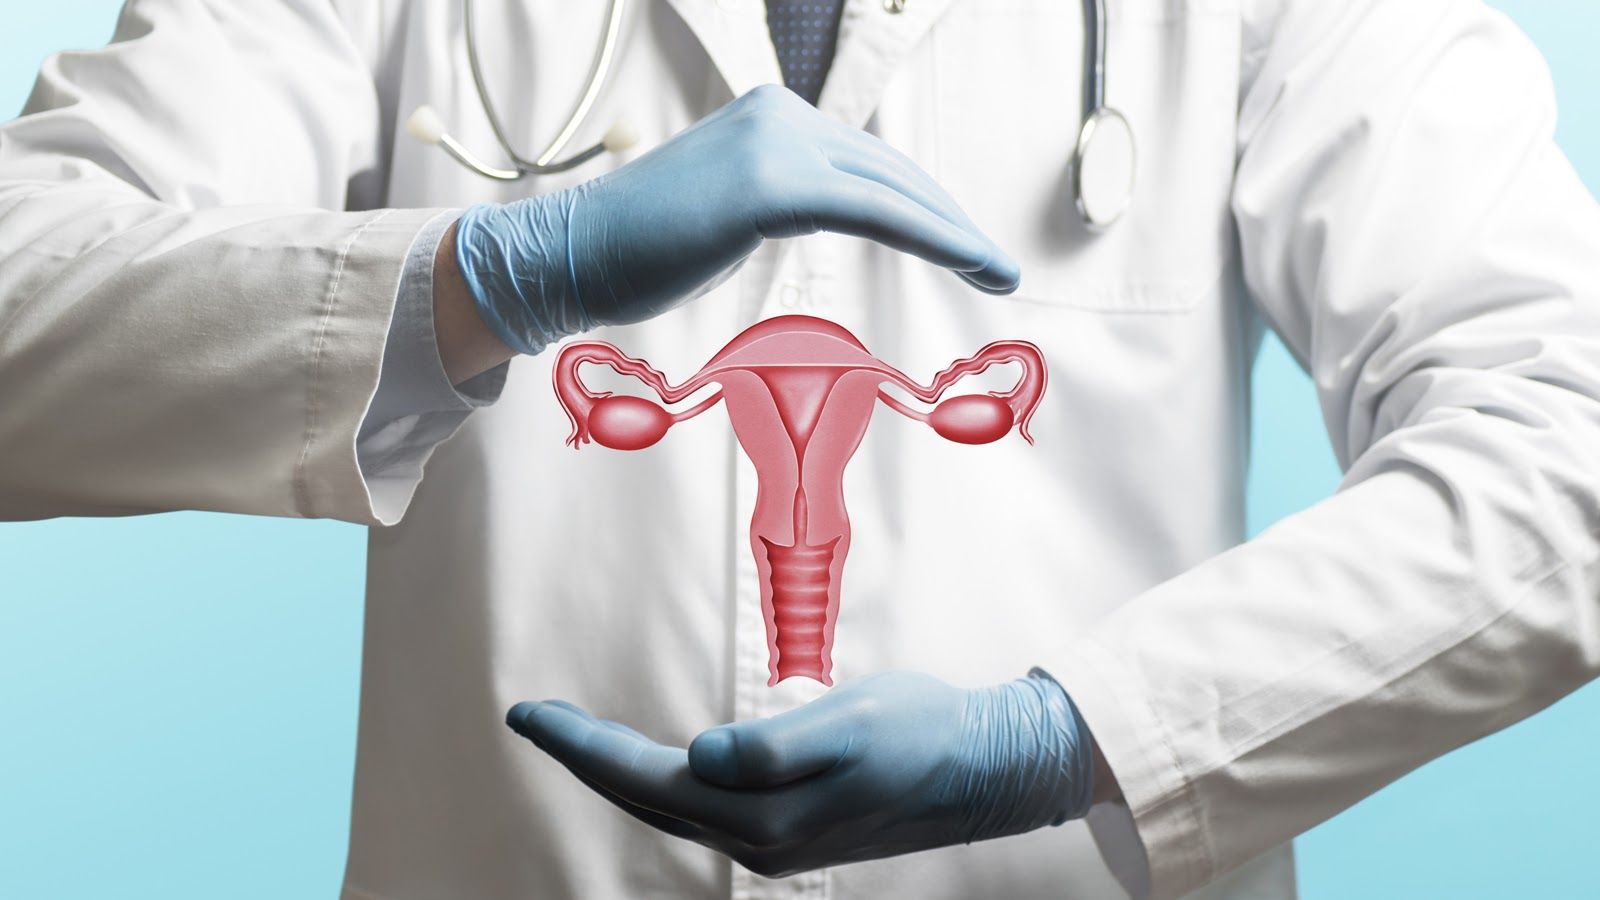 Ung thư cổ tử cung là bệnh phổ biến ở nữ giới